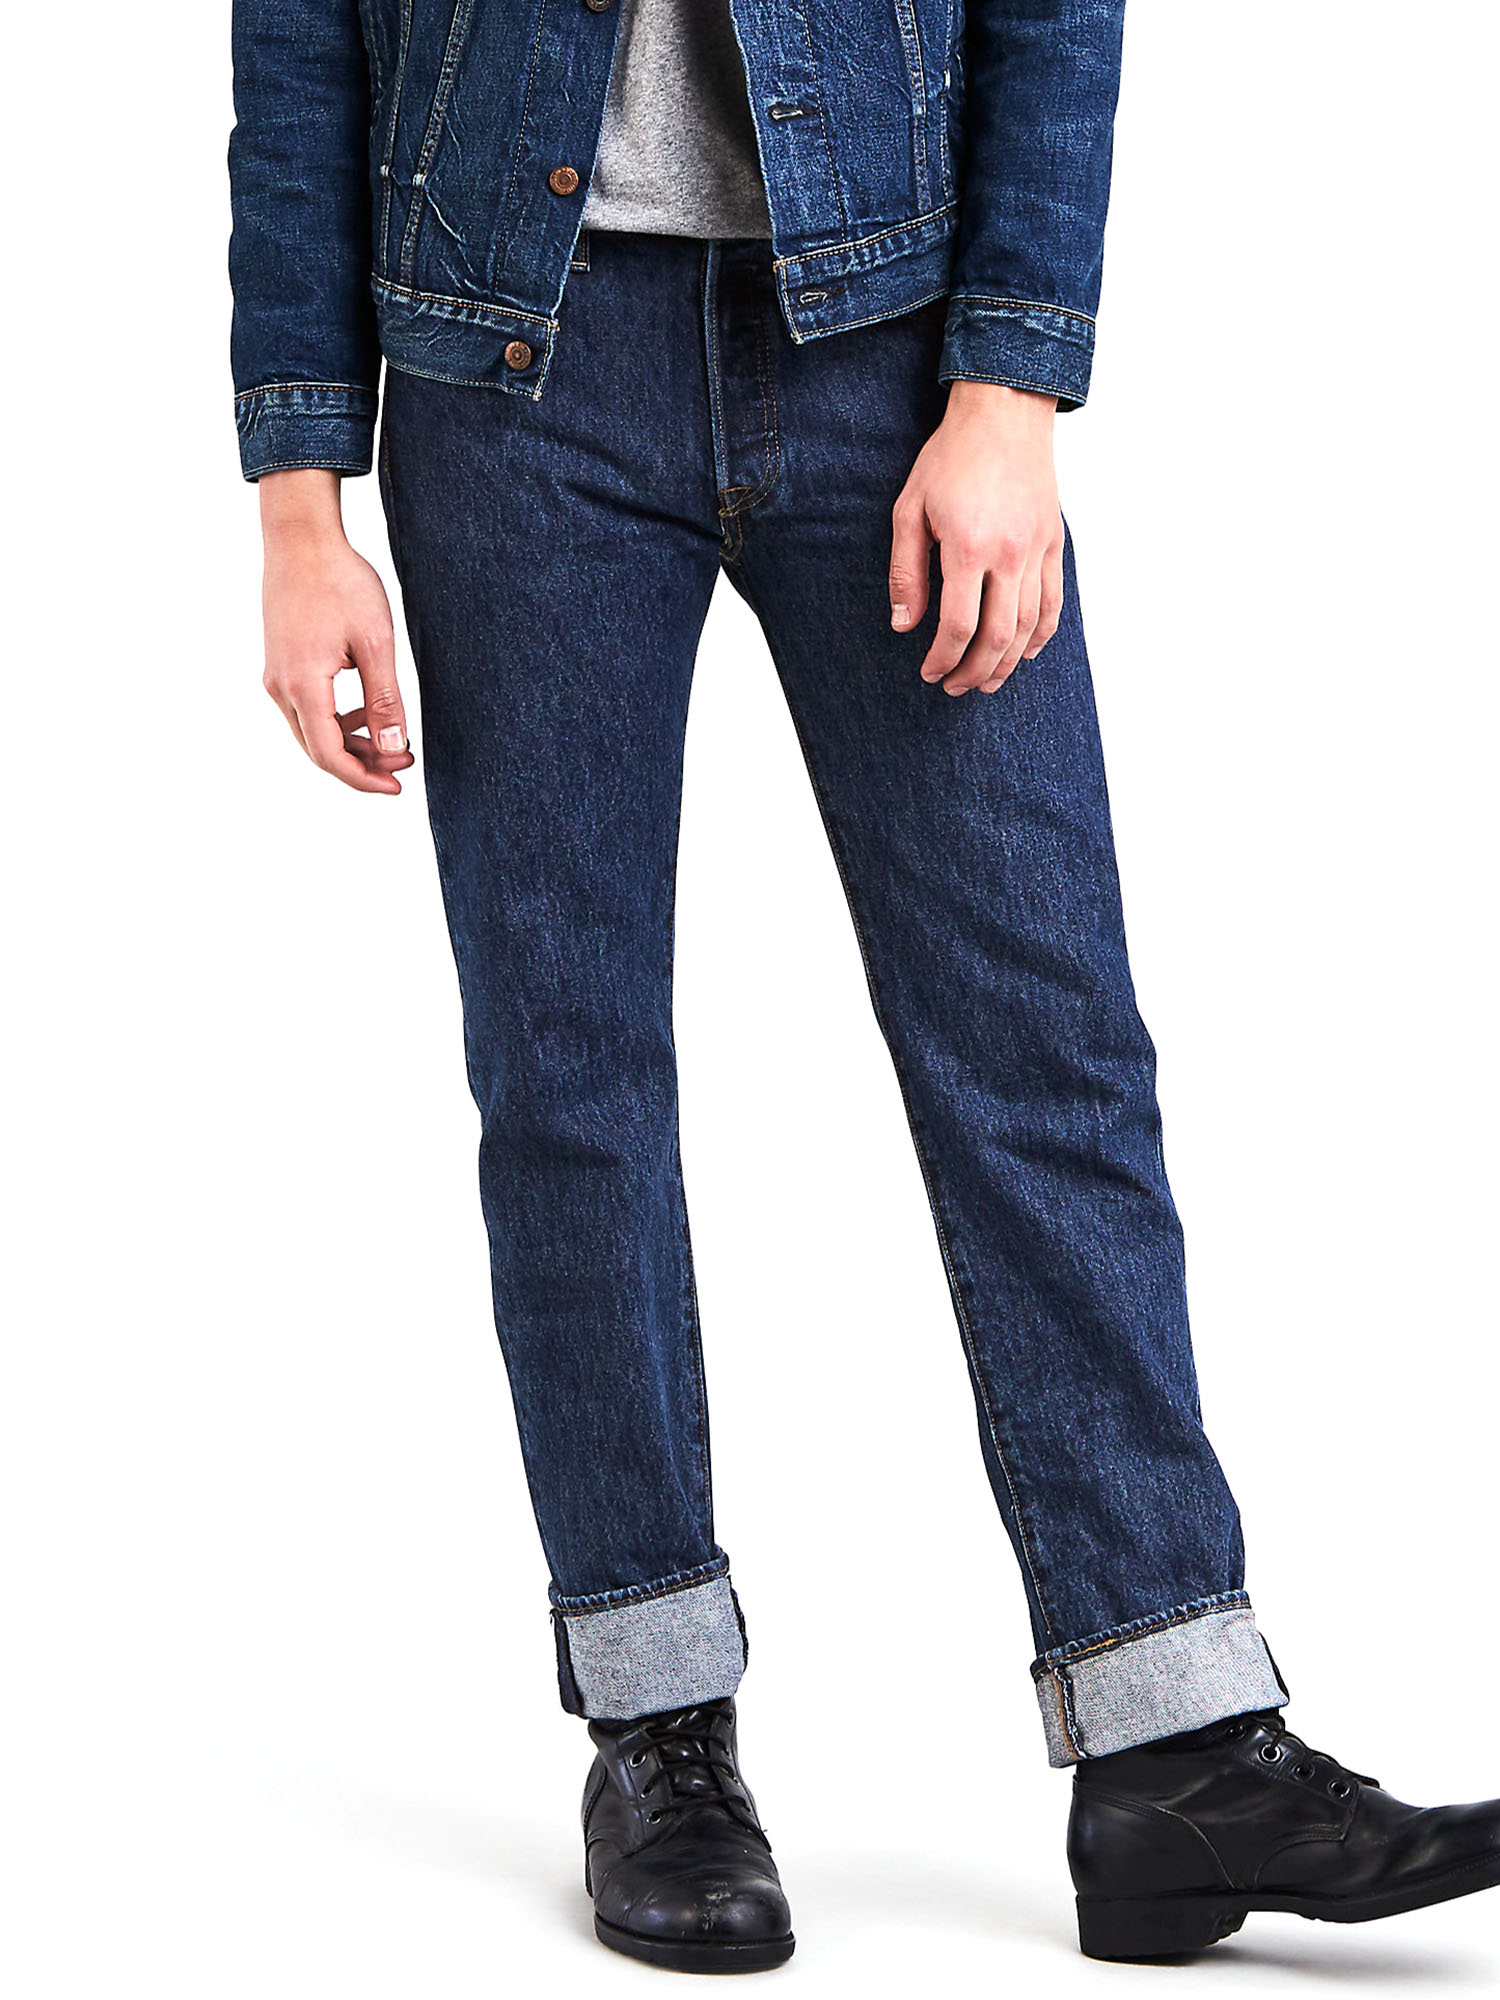 Levi's Men's 501 Original Fit Jeans - image 1 of 6